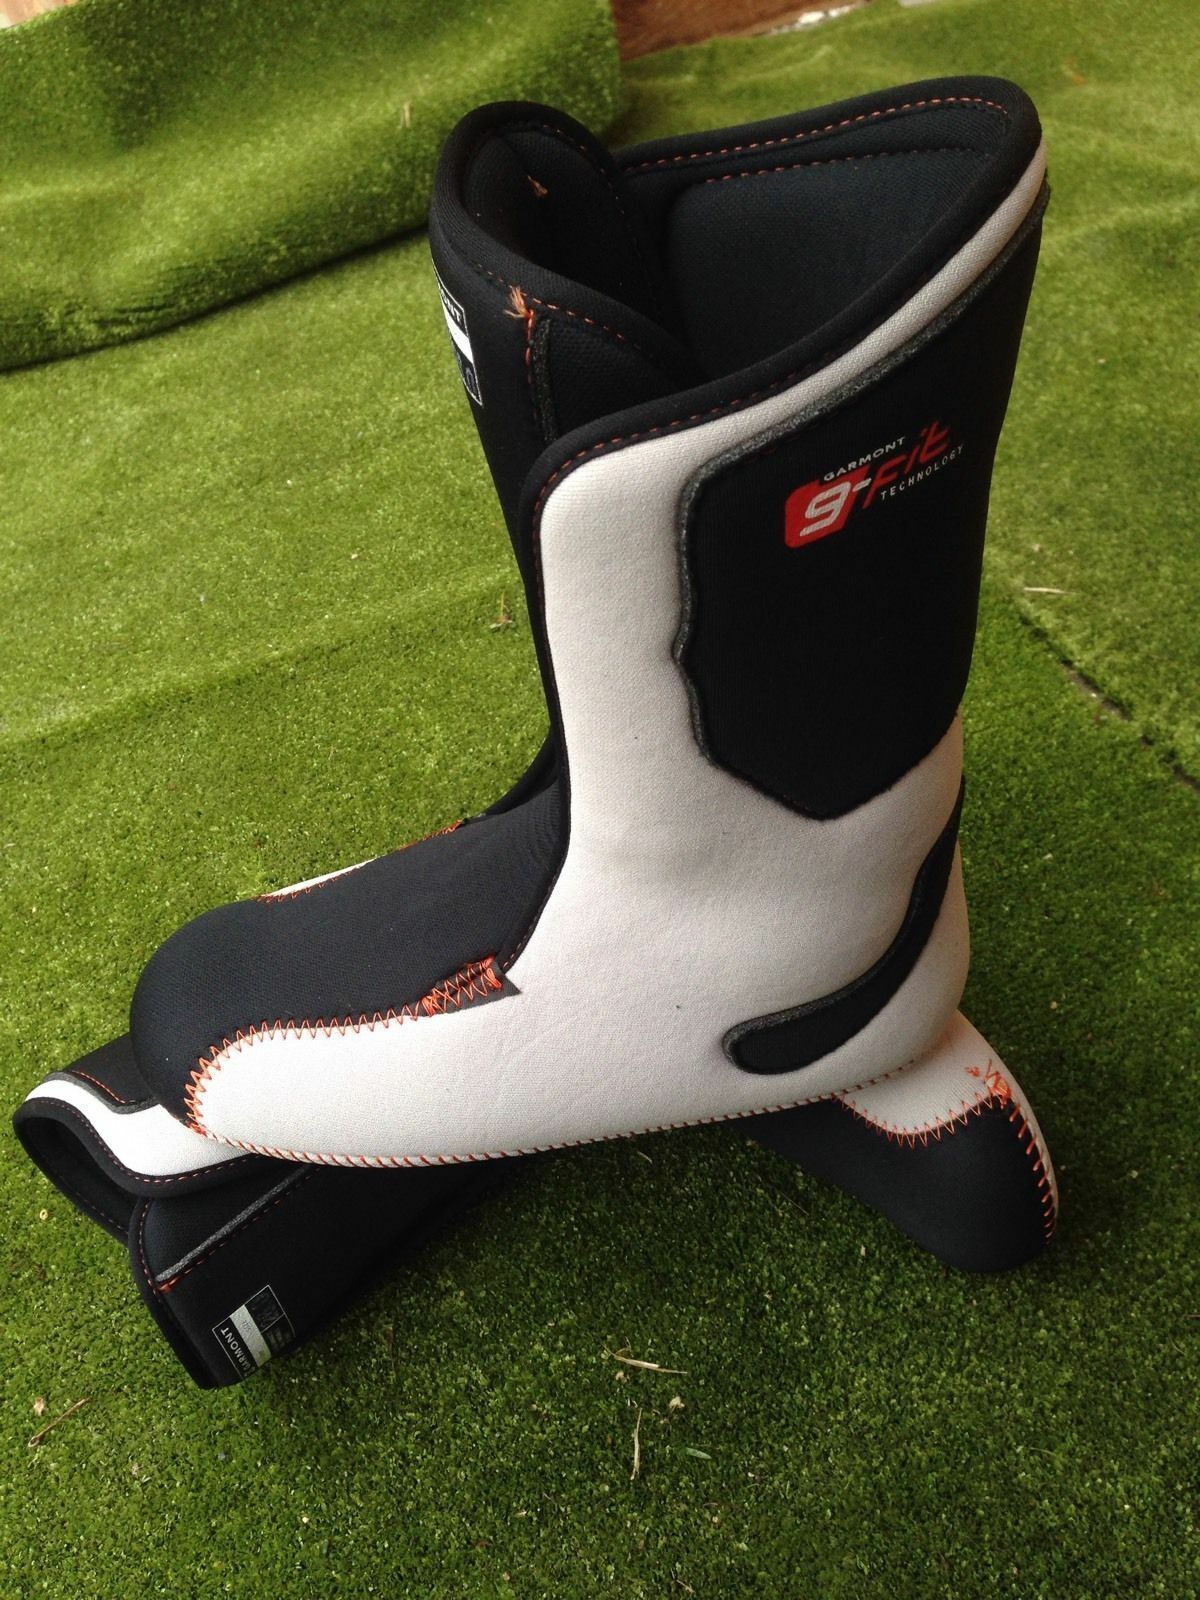 Scarpette interne per scarponi da sci e da snowboard boots ski liners G-fit thermofit